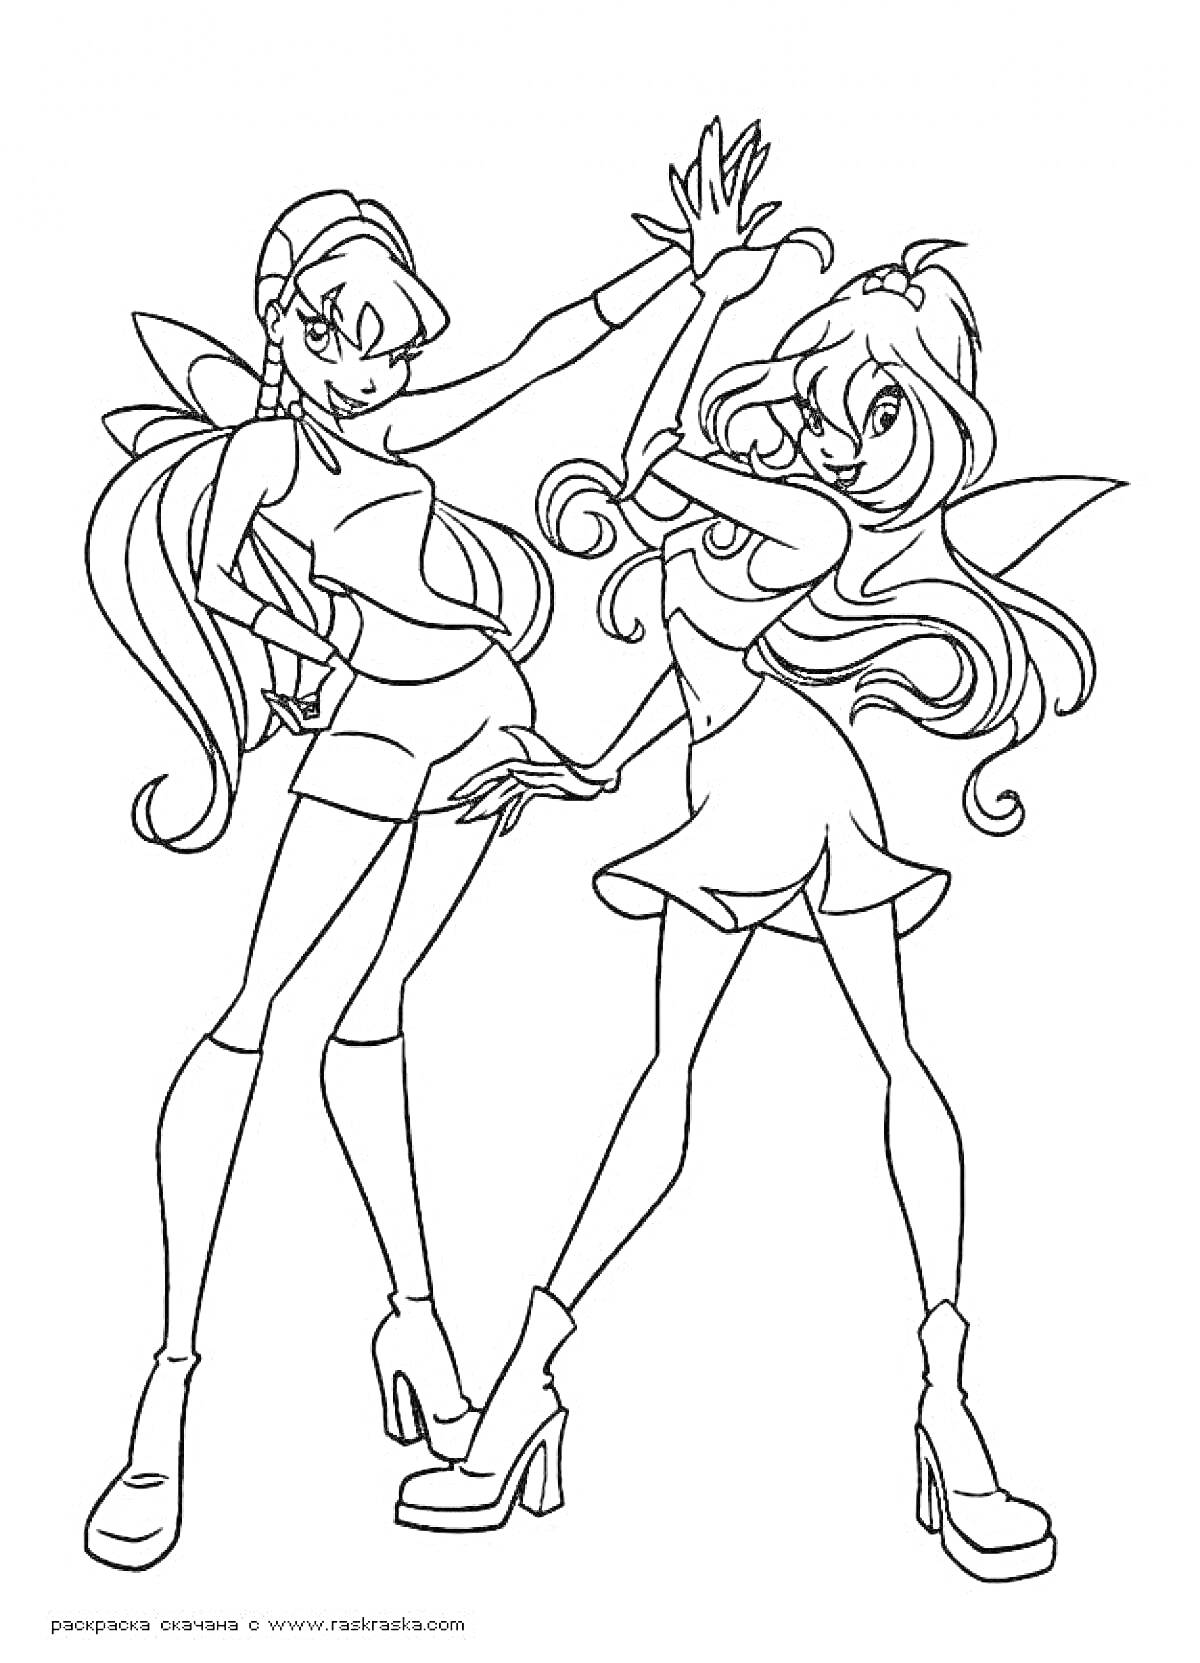 Раскраска две девушки-феи, стоящие спина к спине, с большими крыльями и в модной короткой одежде